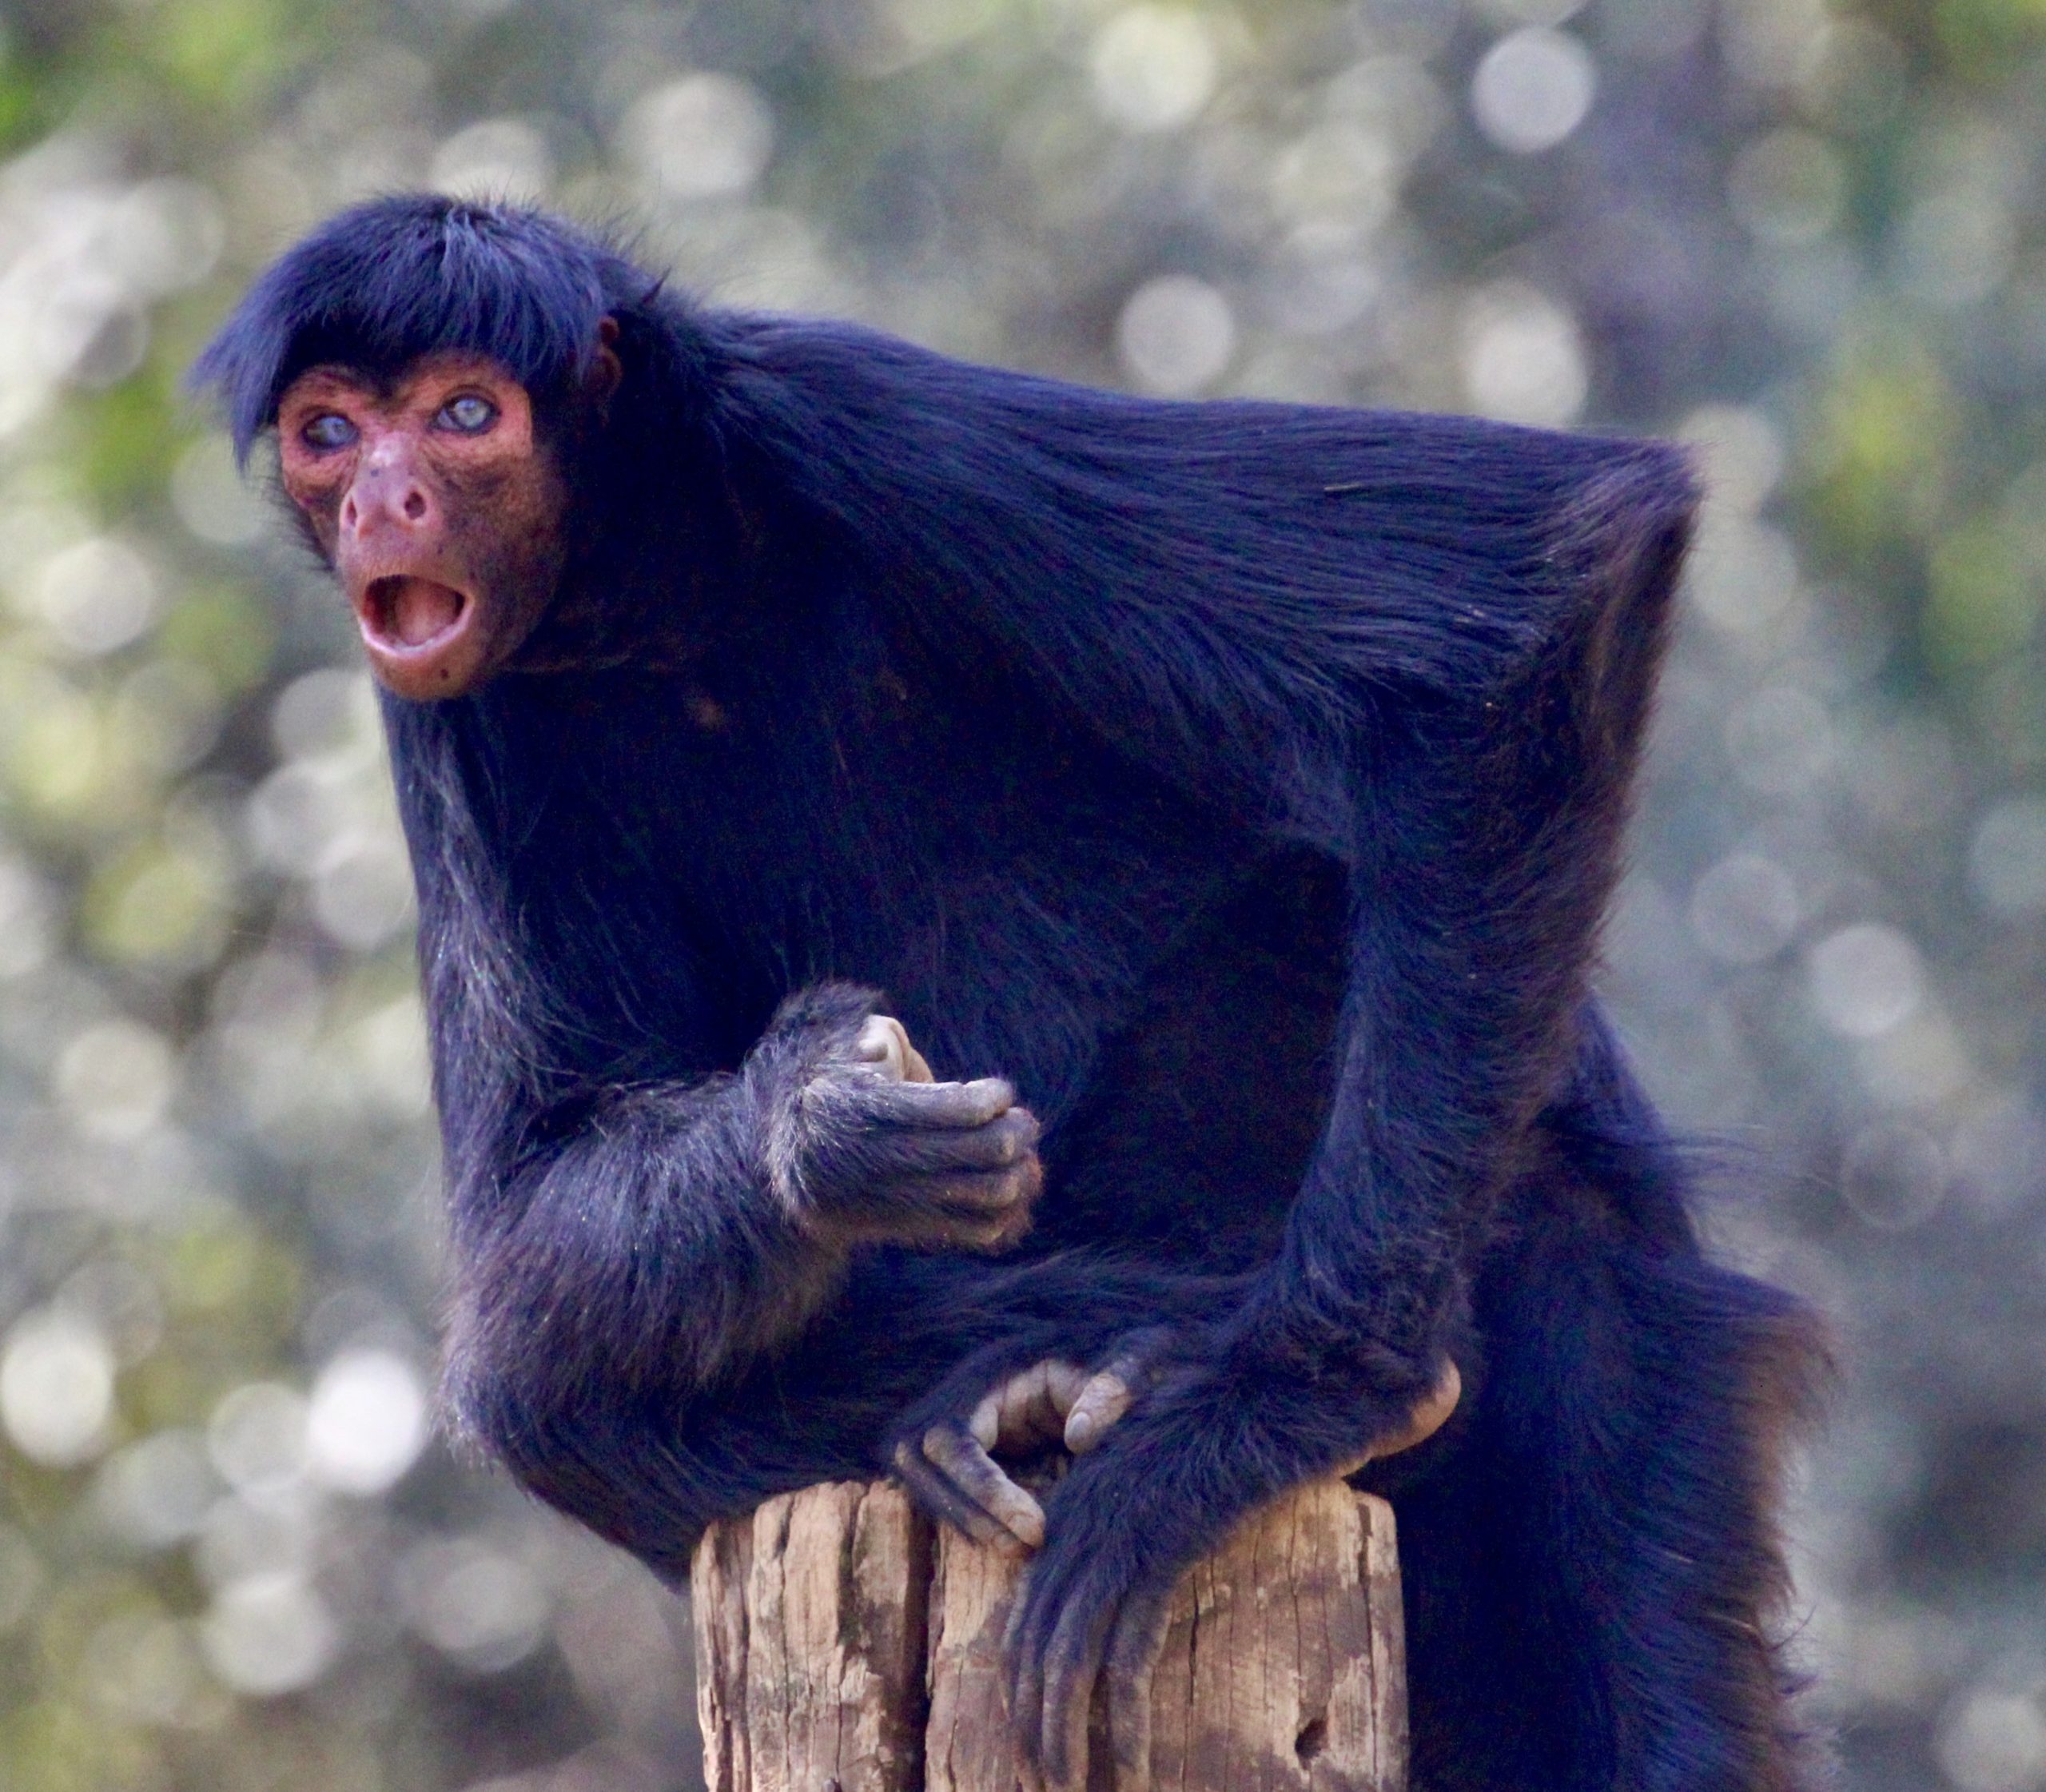 G1 - Macaco-aranha-de-cara-preta - notícias em Fauna